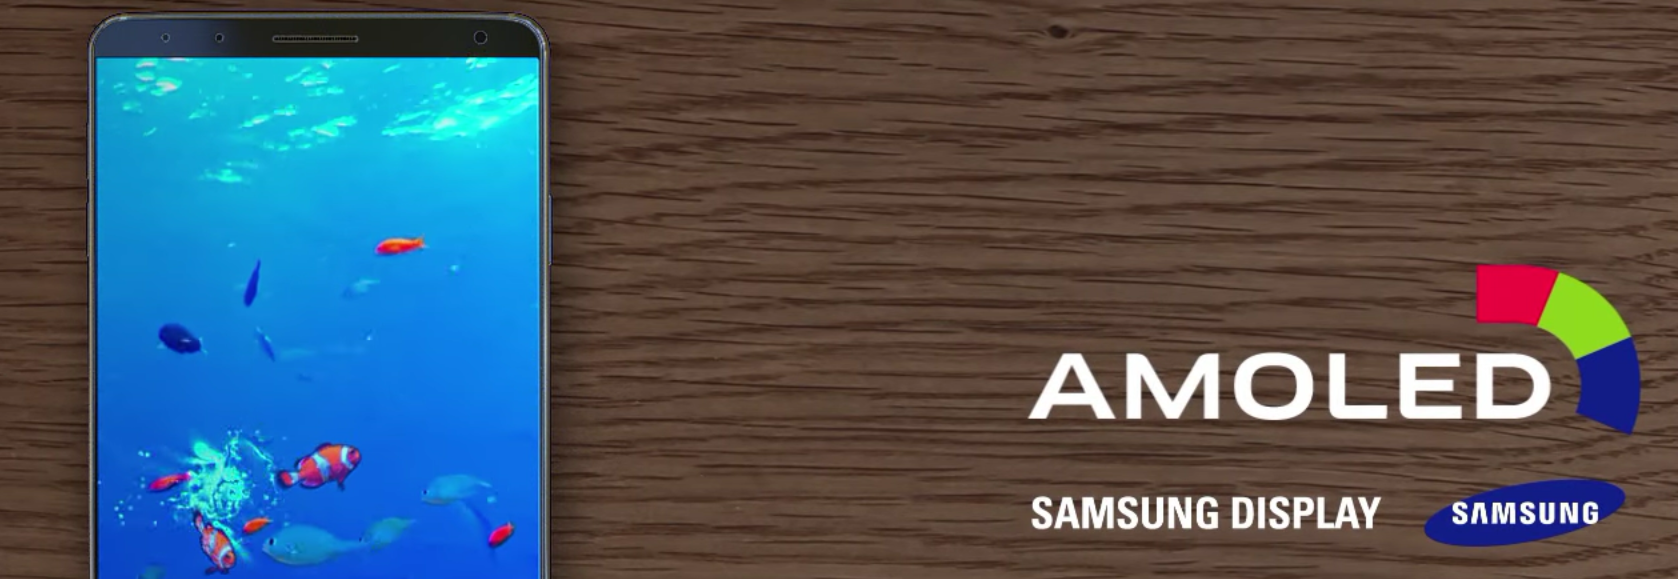 ¿Samsung ha lanzado su Galaxy s8?